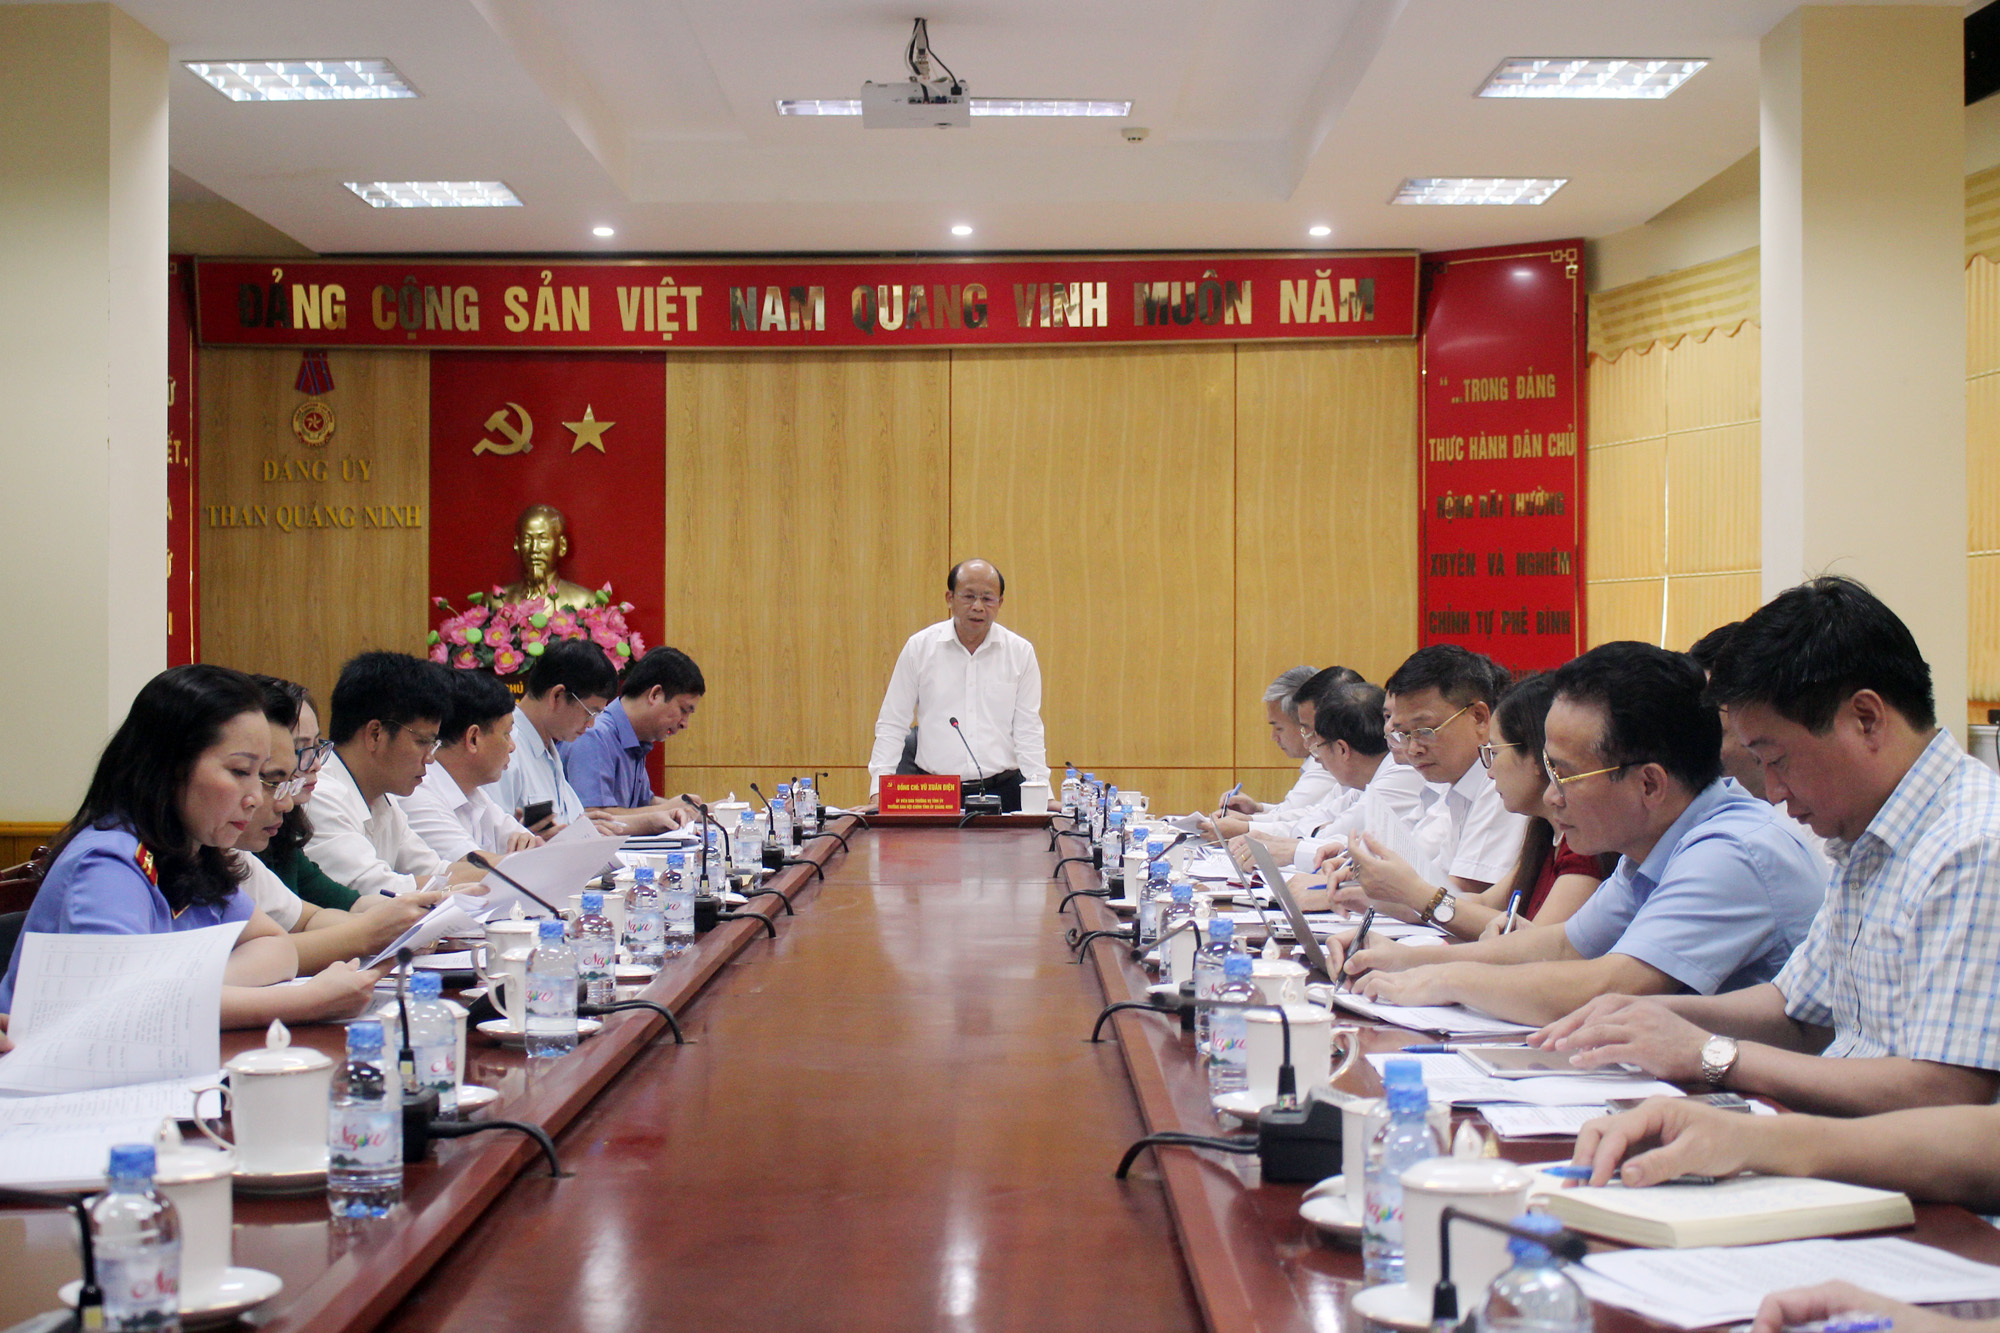 Đoàn kiểm tra của Ban Thường vụ Tỉnh ủy công bố quyết định kiểm tra tại Đảng ủy Than Quảng Ninh.